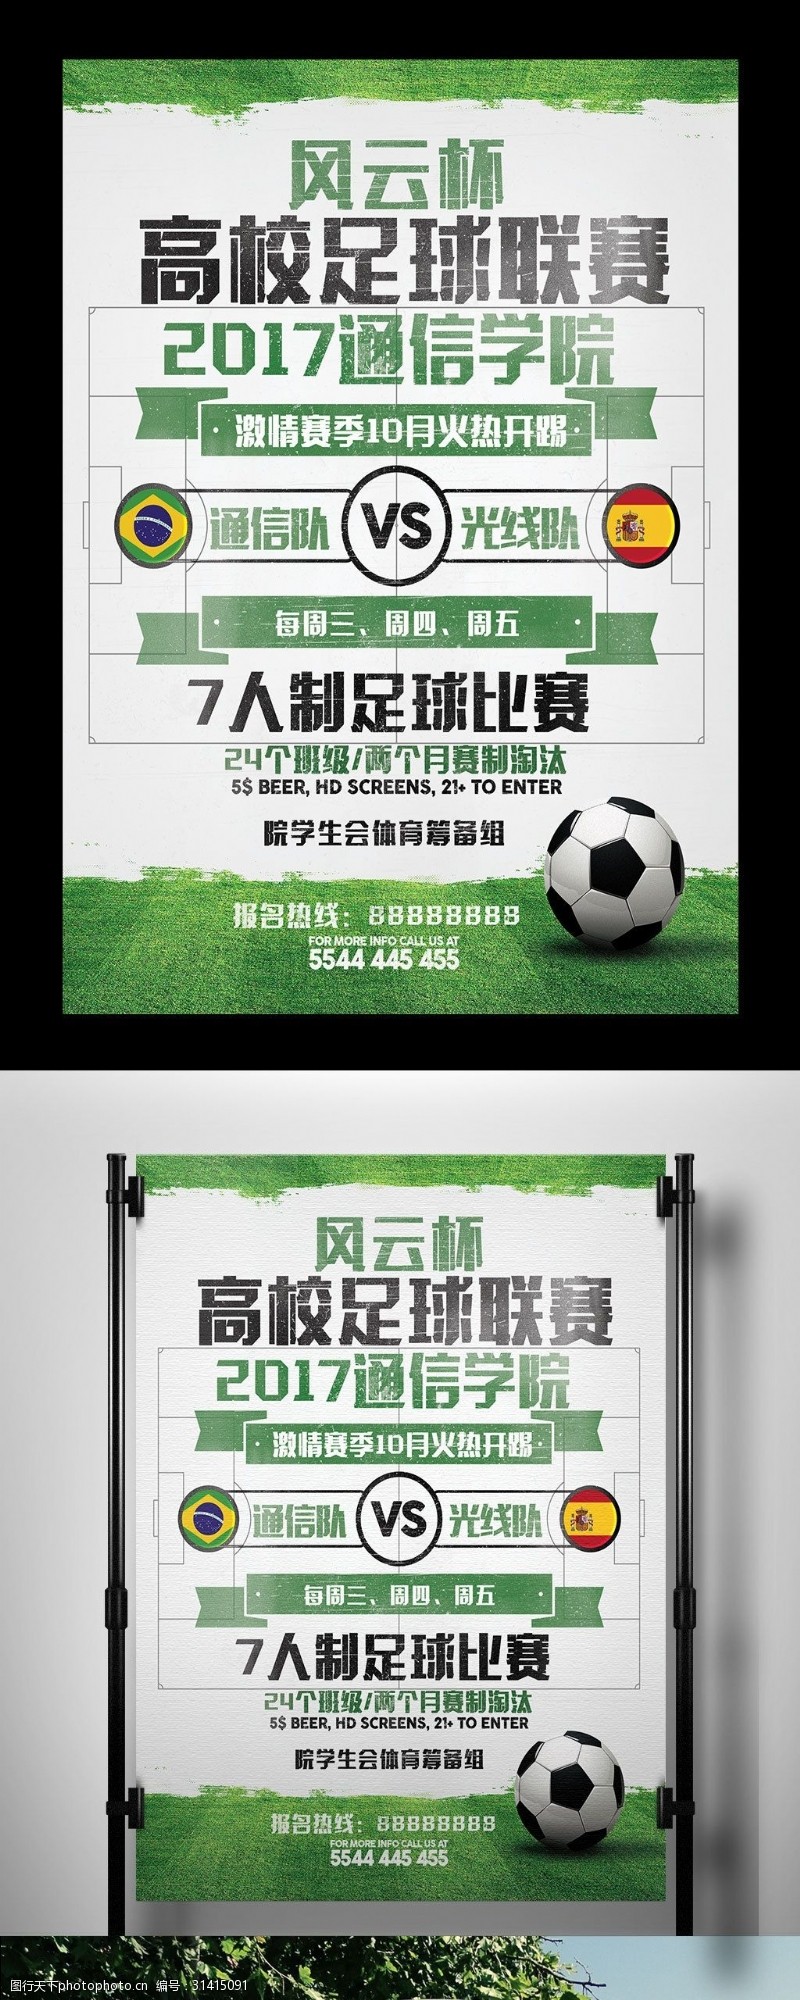 足球竞技场大学高校足球体育比赛海报